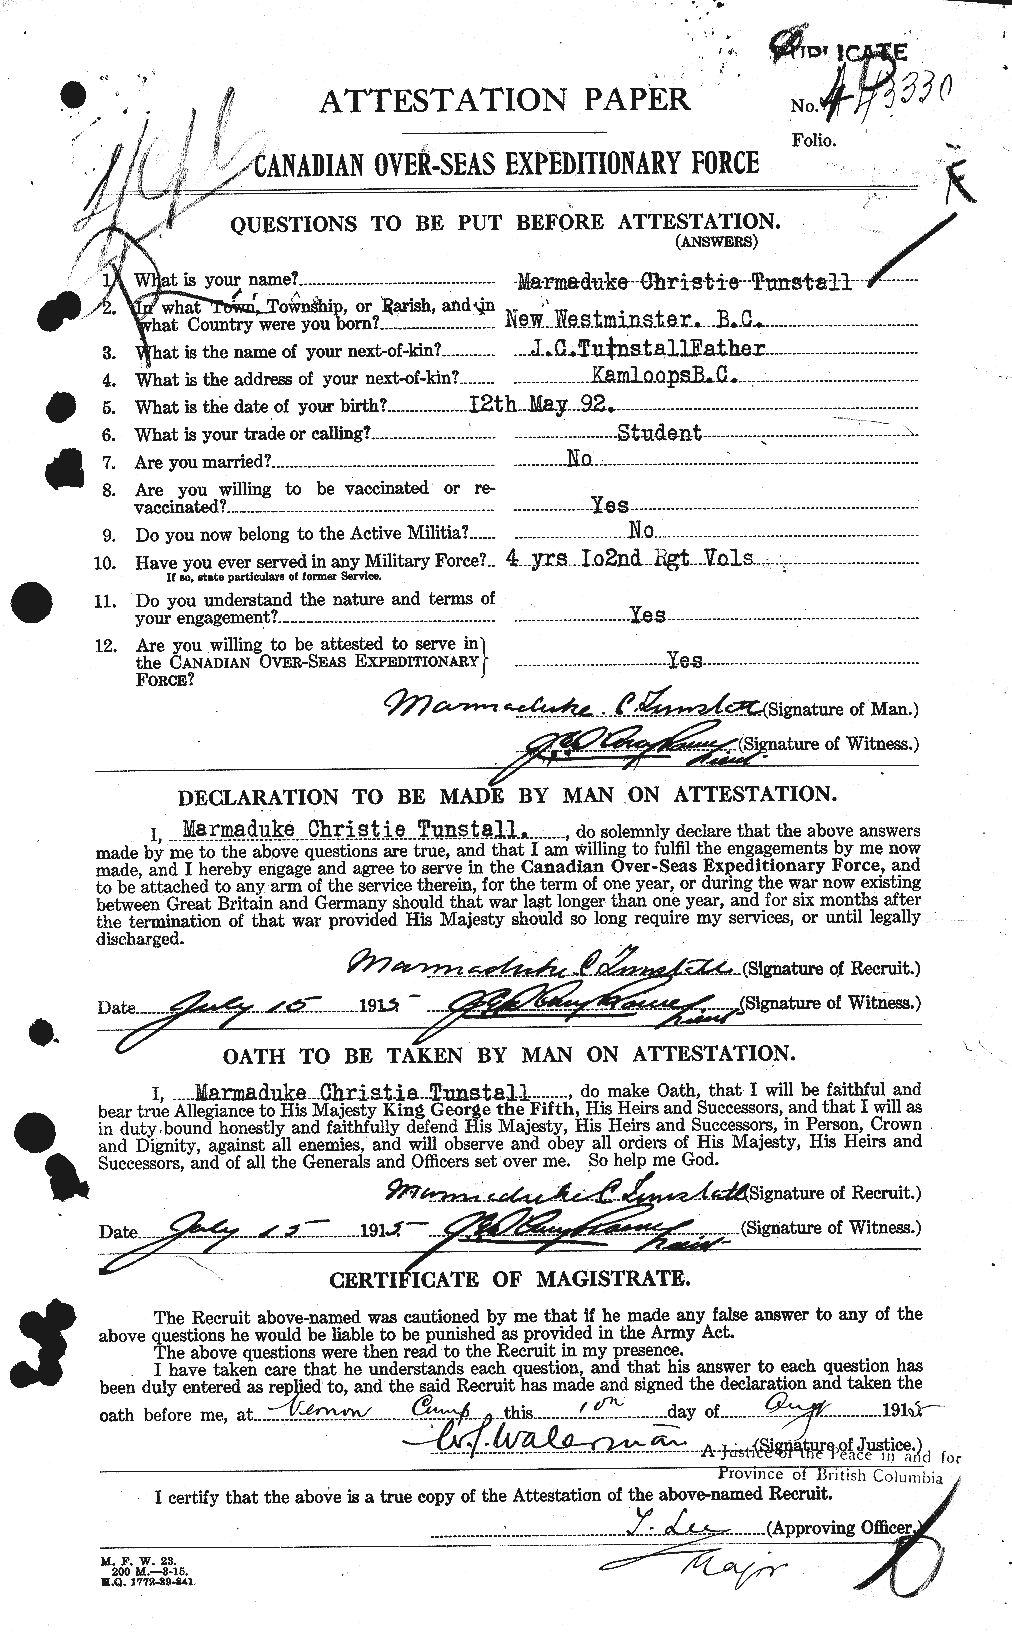 Dossiers du Personnel de la Première Guerre mondiale - CEC 644506a